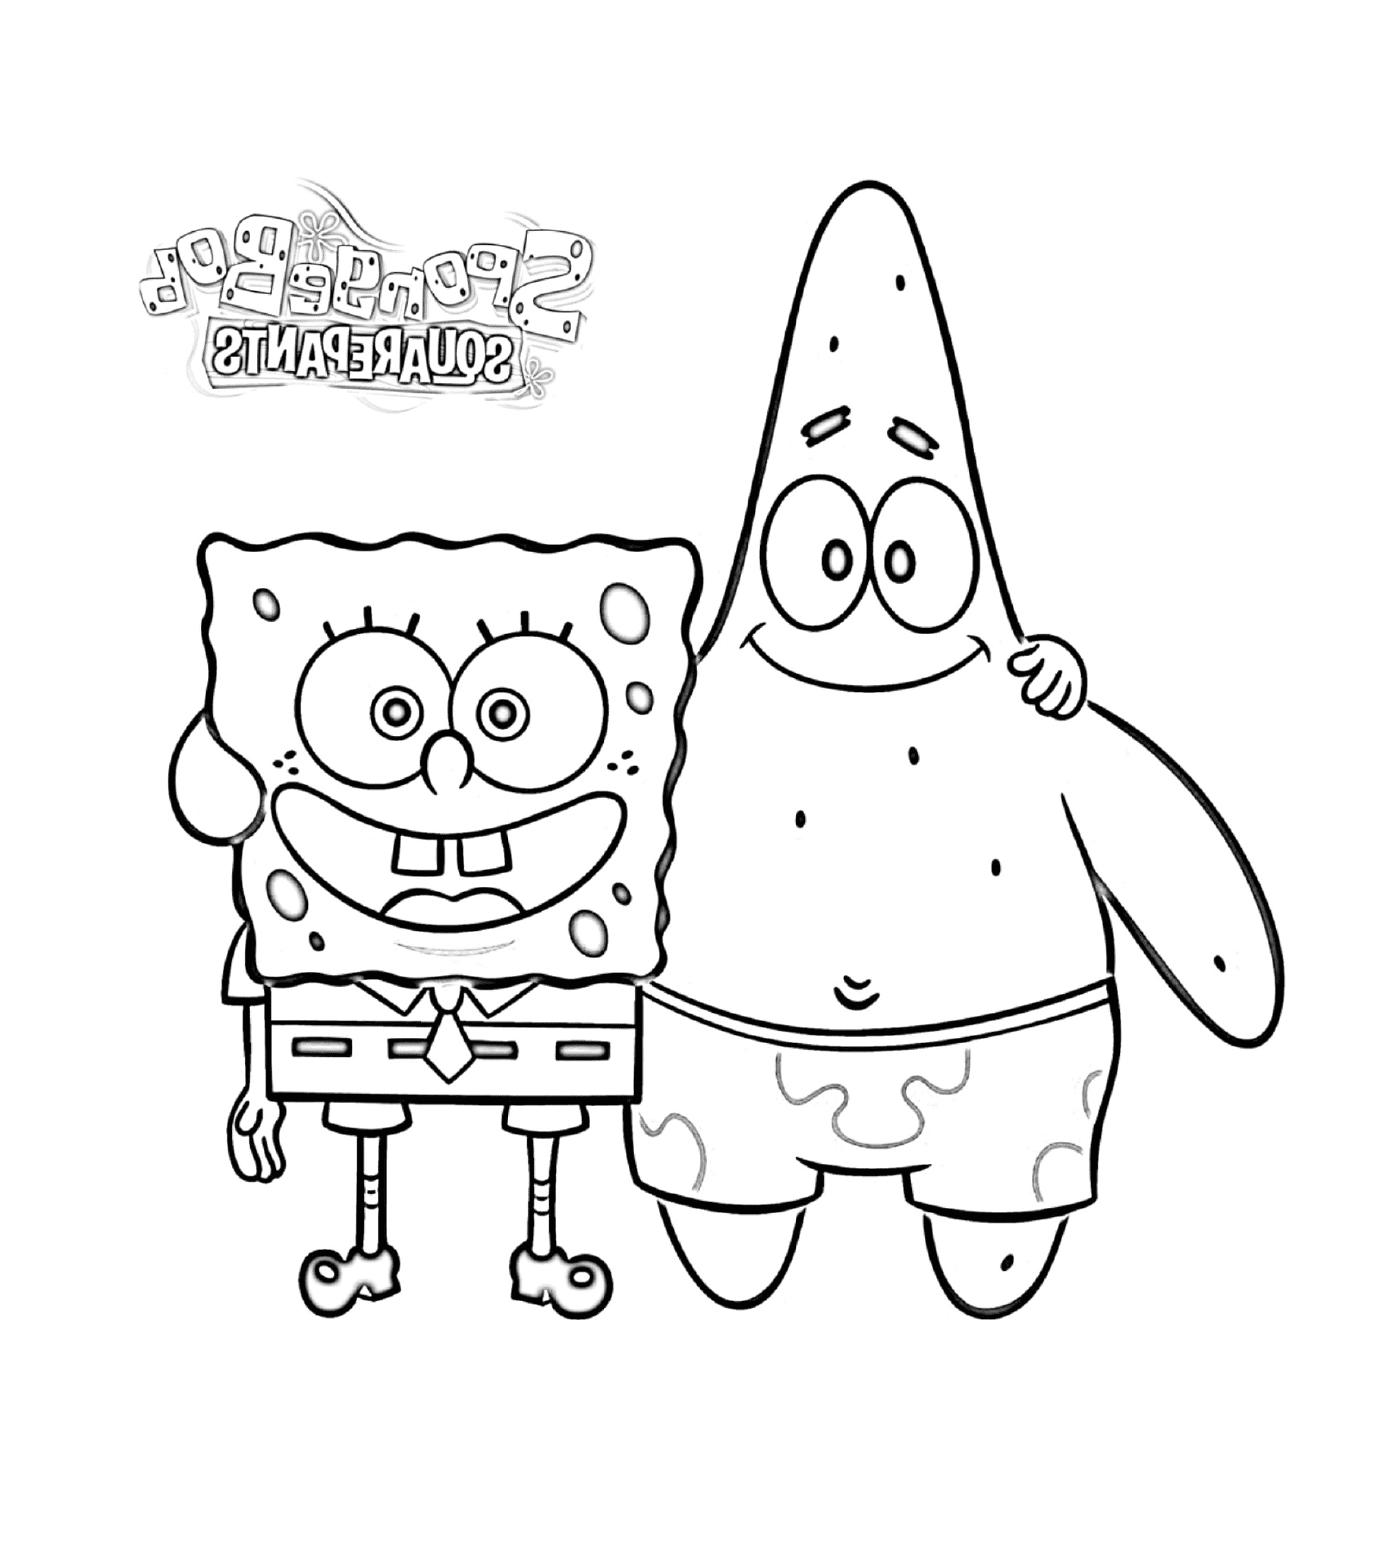  Spongebob e Patrick, amici 